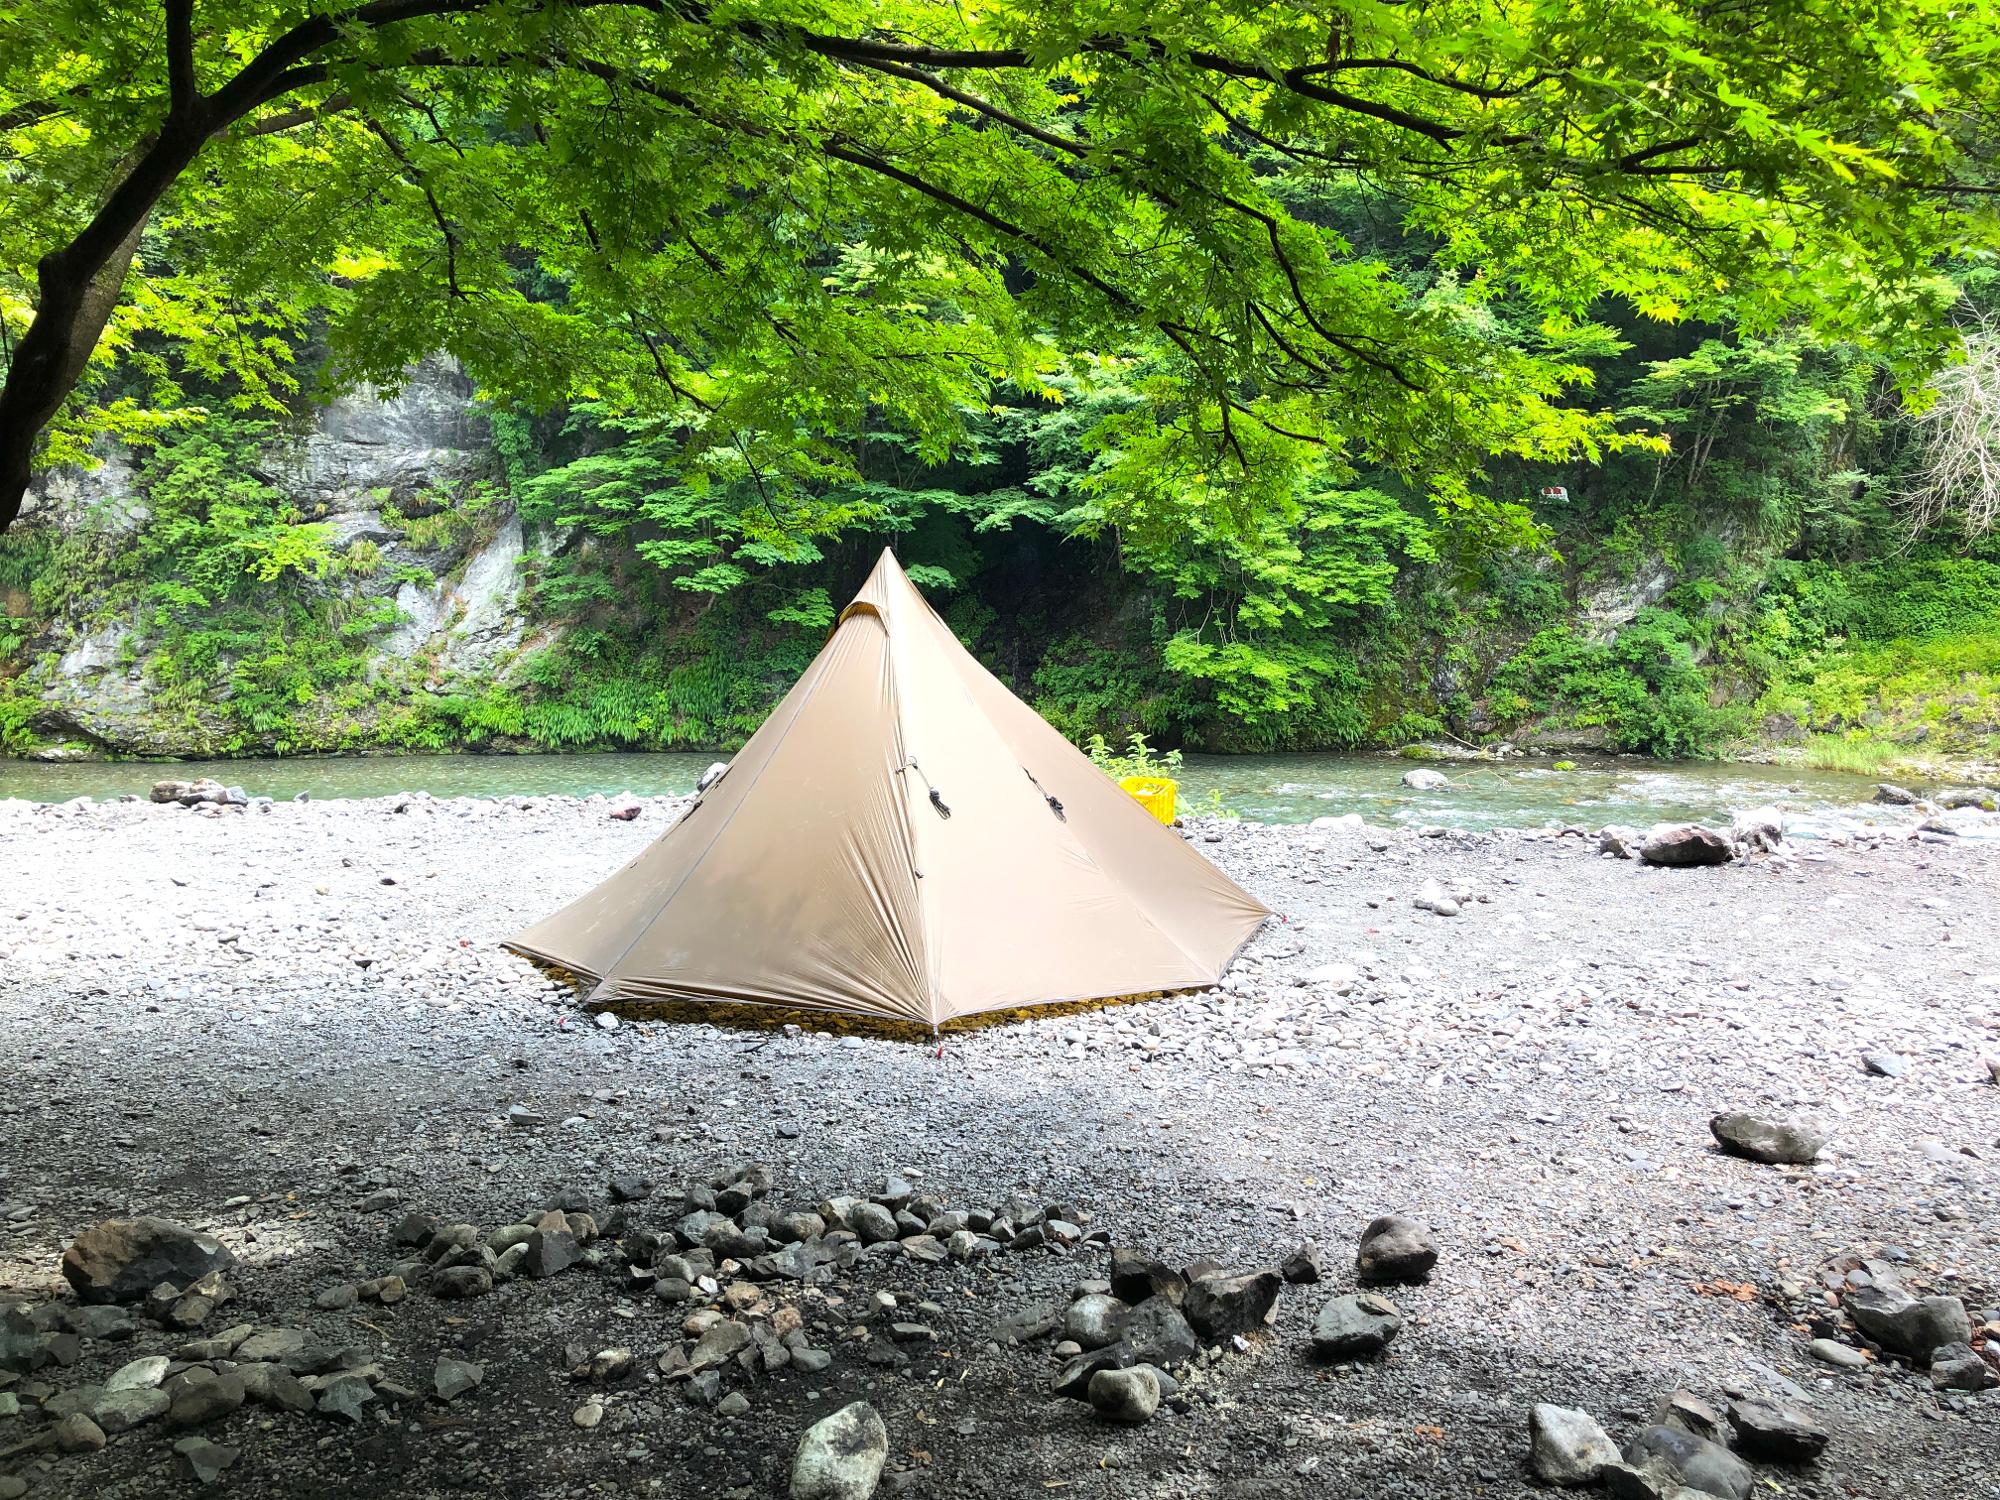 最適な価格未使用 テント ワンポールテント 1人用 シルナイロン ソロキャンプ アウトドア ツーリング 登山 山岳テント コンパクト 軽量 防水 od540 ヘキサ